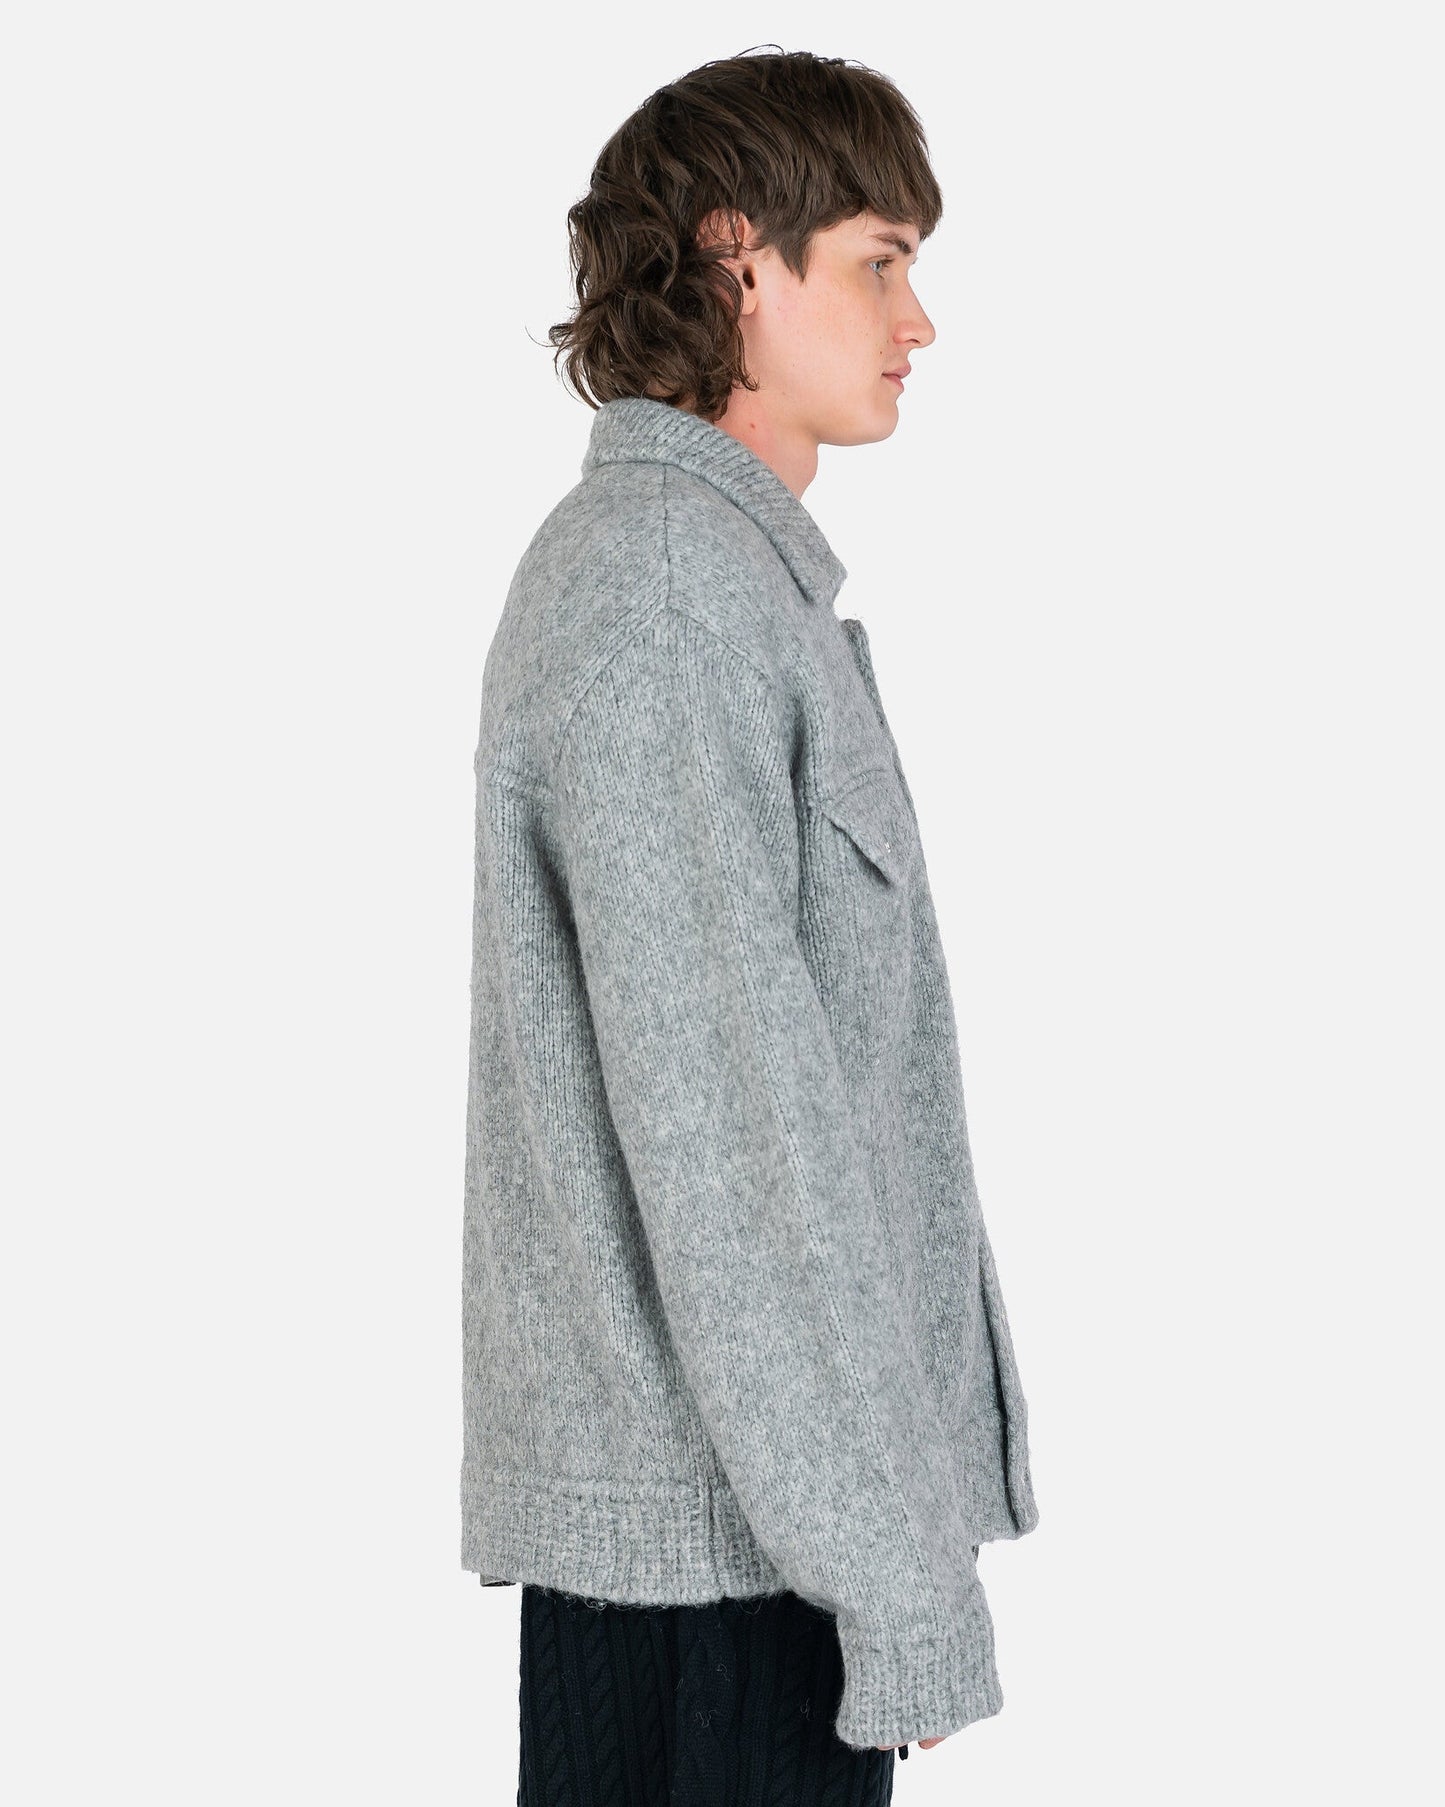 Nahmias Men's Jackets Knit Trucker Jacket in Grey